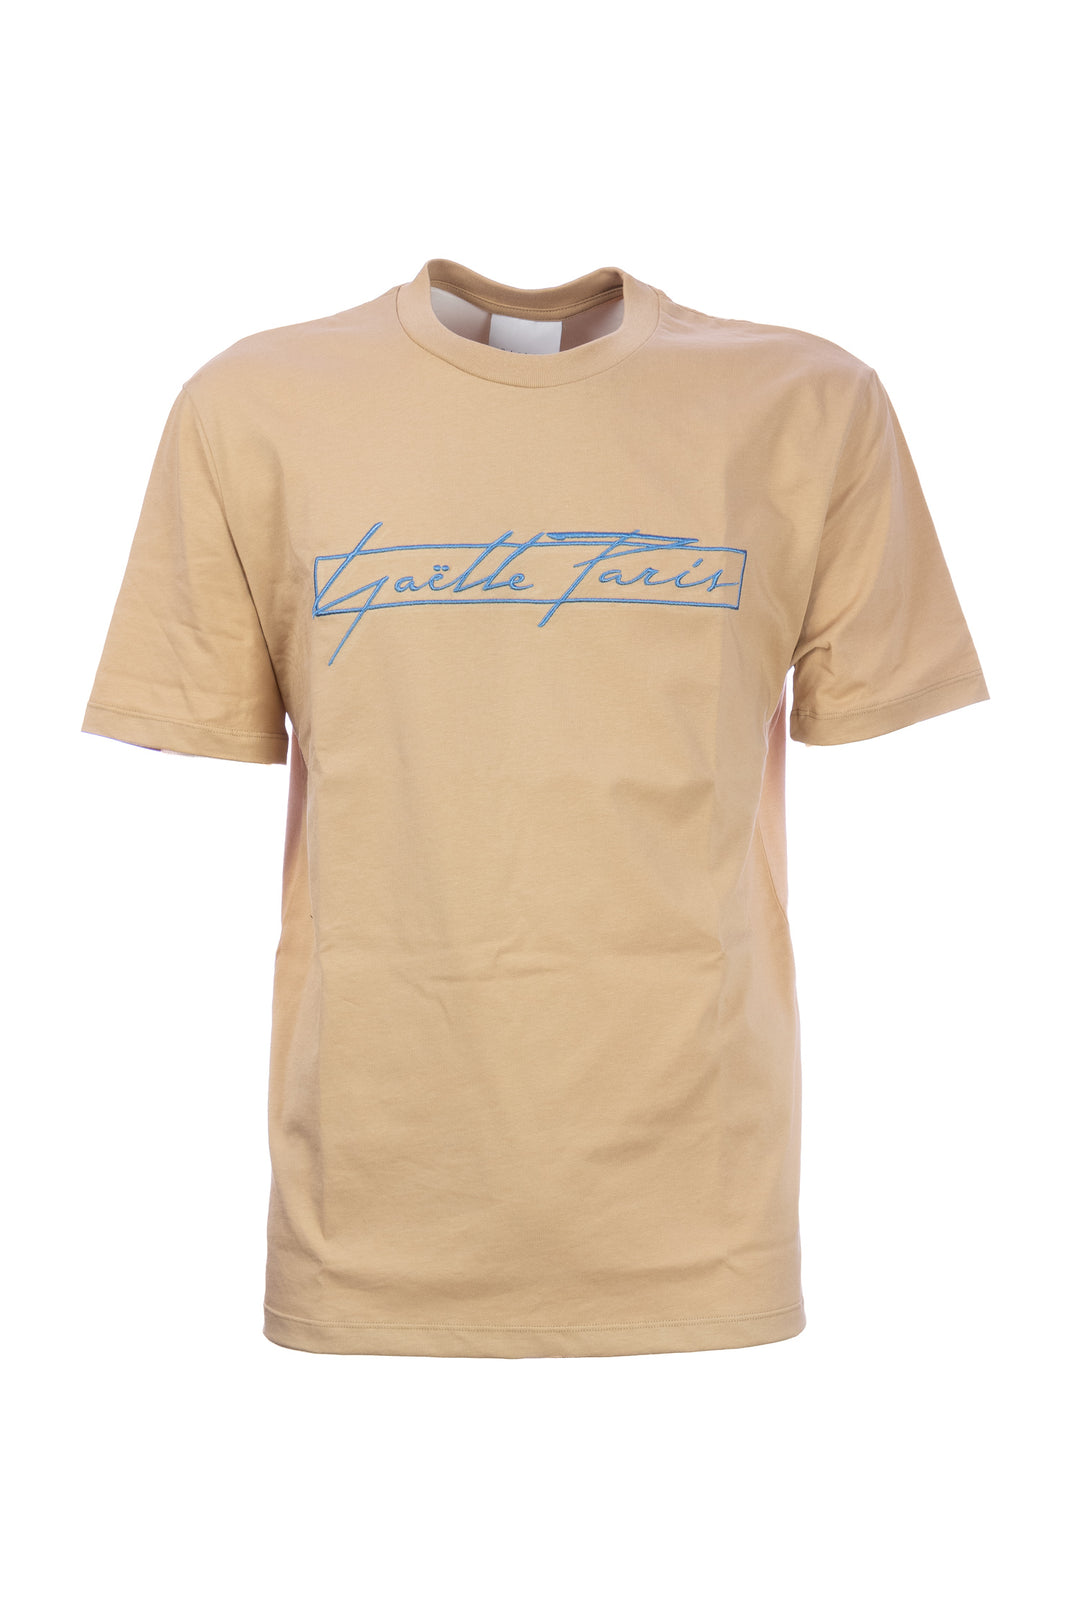 GAELLE T-shirt beige in cotone con logo grande ricamato in contrasto - Mancinelli 1954